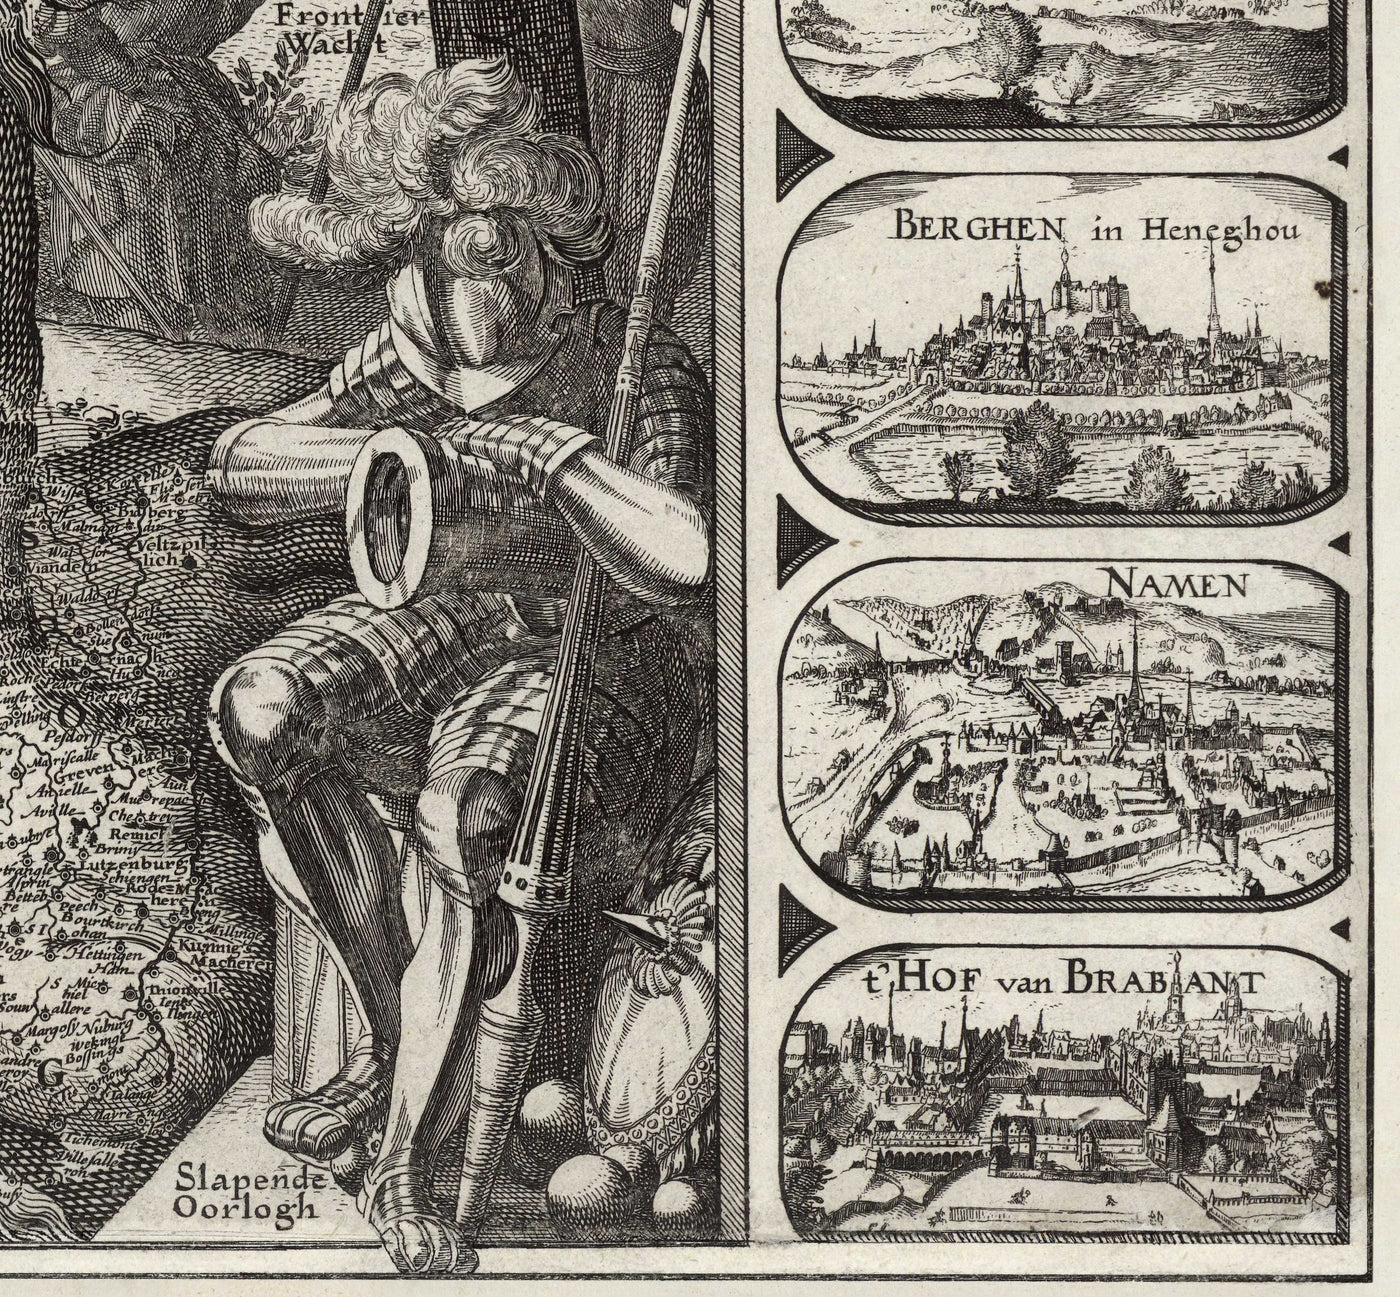 Alte Leo-Belgicus-Karte der Niederen Lande von 1611 von C. Janszoon Visscher - Niederlande, Belgien, Brüssel, Amsterdam, Genk